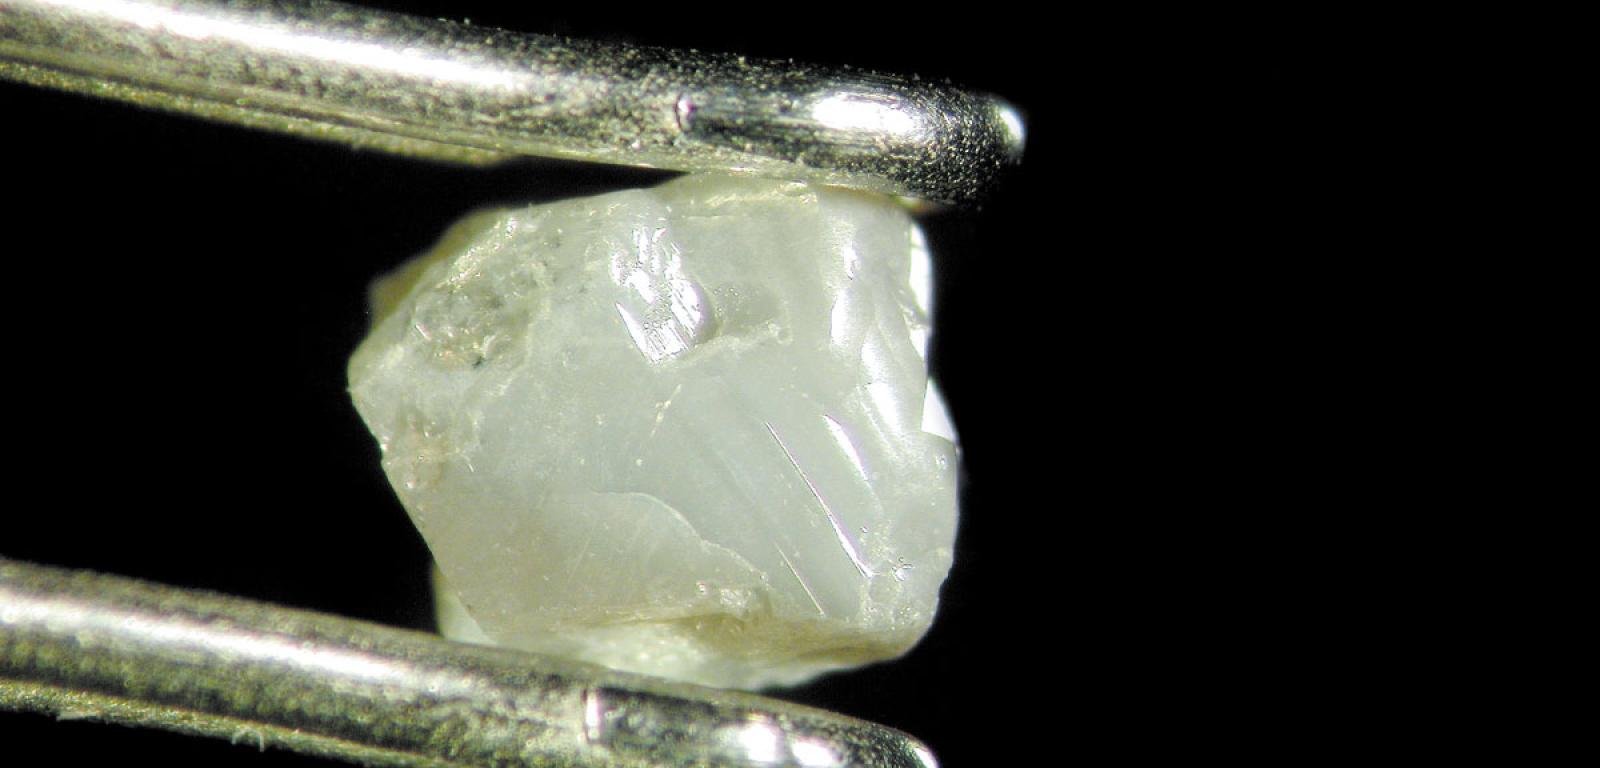 Włóknisty diament zawiera maleńkie kieszonki z płynem, który powstał w dawnych okresach geologicznych.